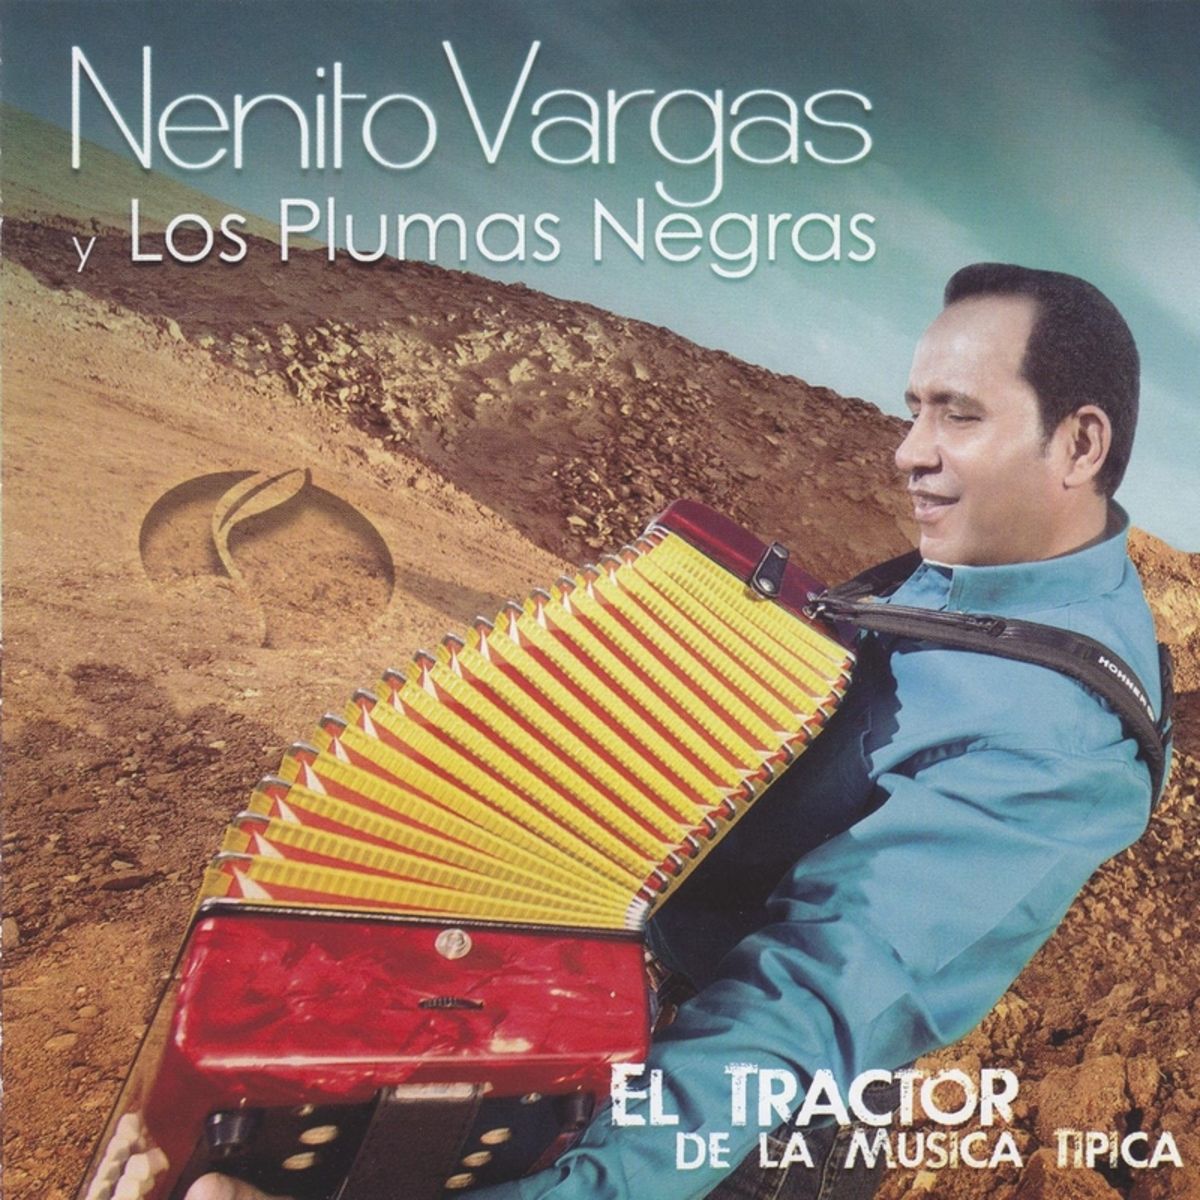 4 - Nenito Vargas y los Plumas Negras - Dejame Tocarte.mp3